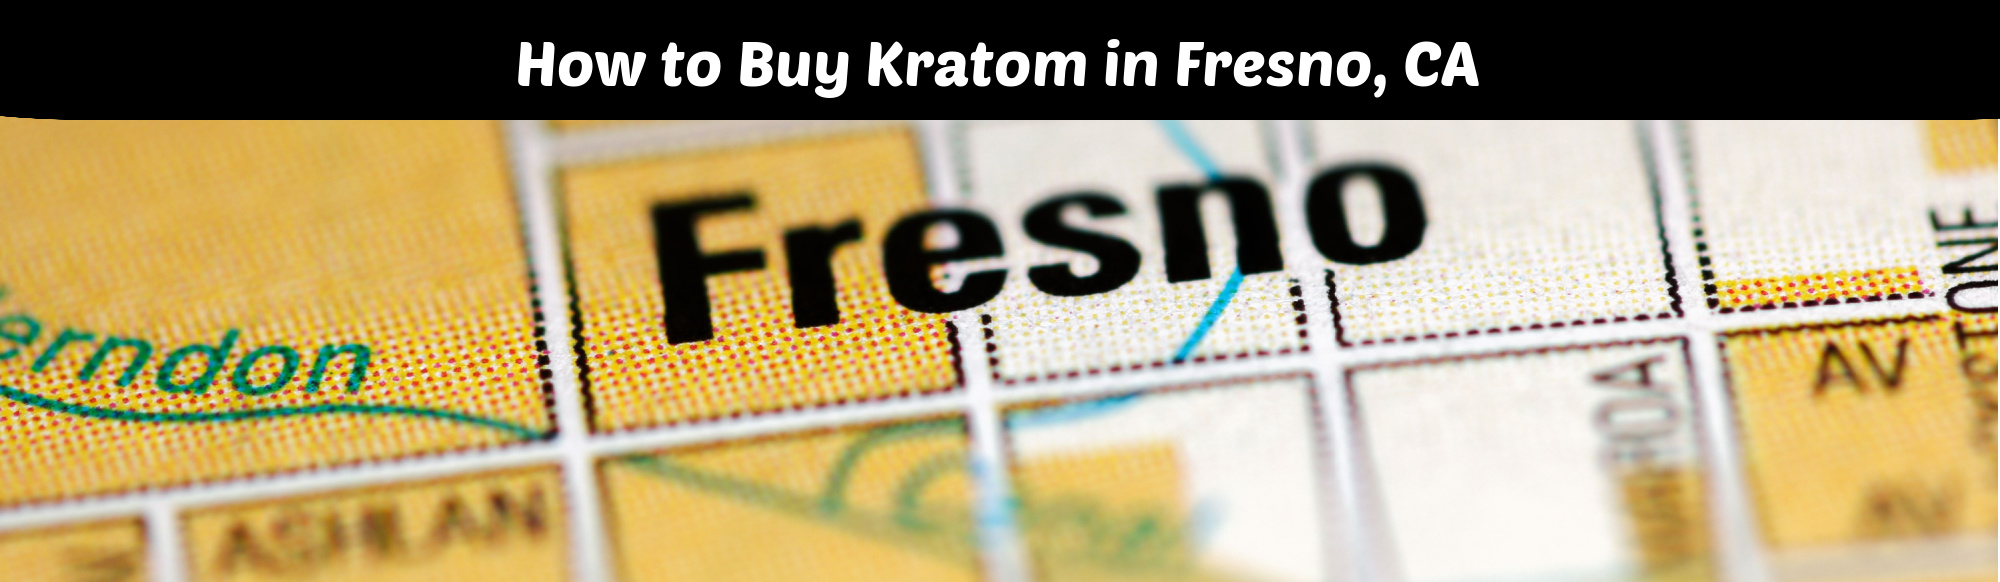 image of how to buy kratom in fresno ca